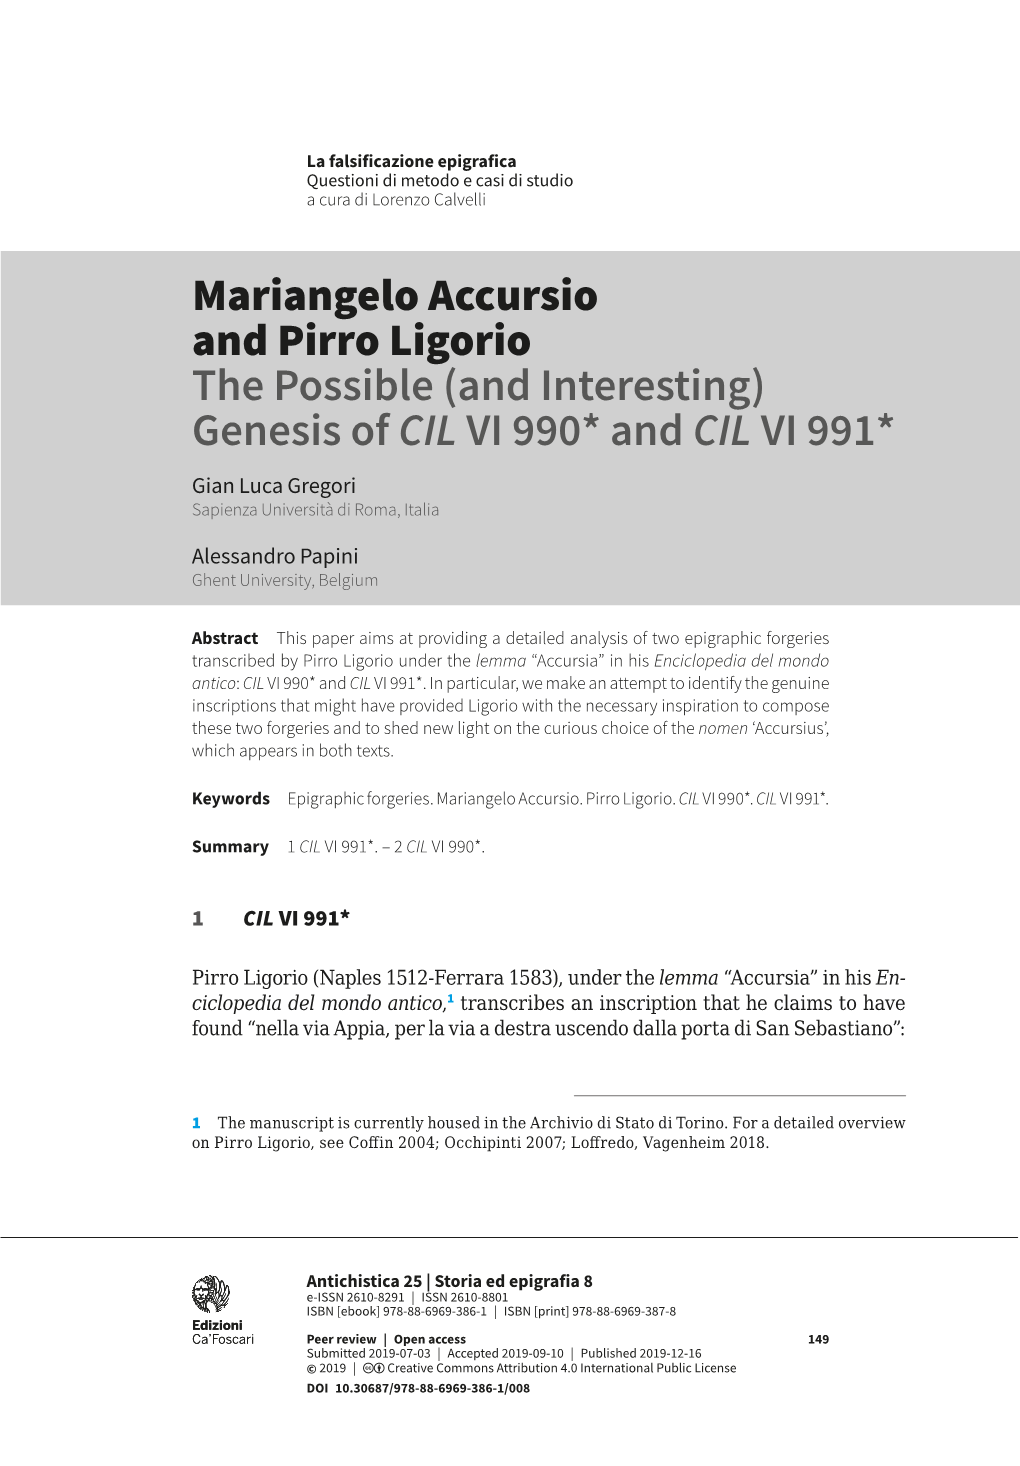 Mariangelo Accursio and Pirro Ligorio the Possible (And Interesting) Genesis of CIL VI 990* and CIL VI 991* Gian Luca Gregori Sapienza Università Di Roma, Italia